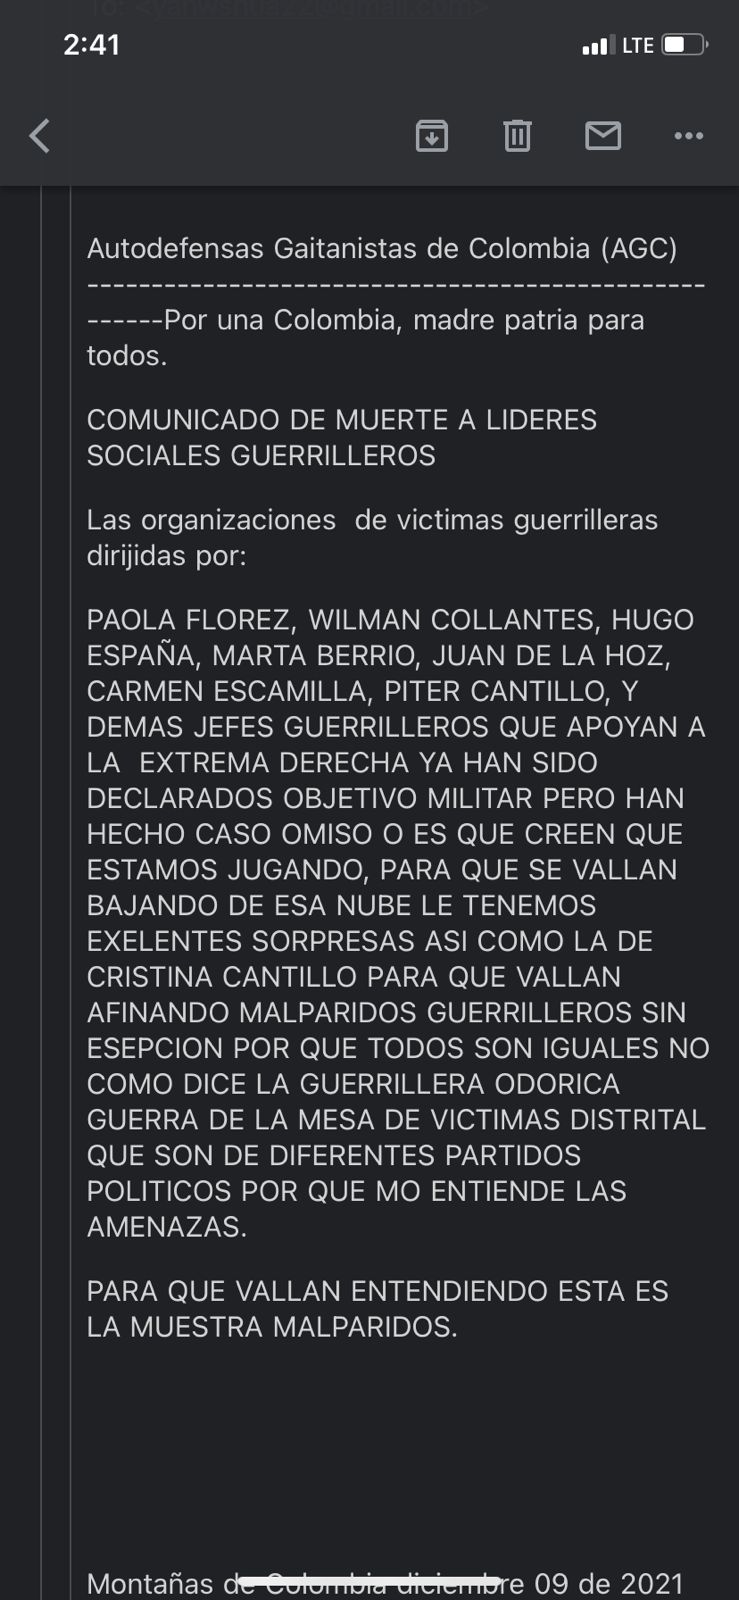 Esta fue la amenaza que recibieron algunos líderes el 9 de diciembre en la que las AGC anuncian que les harán lo mismo que a Cristina Cantillo.